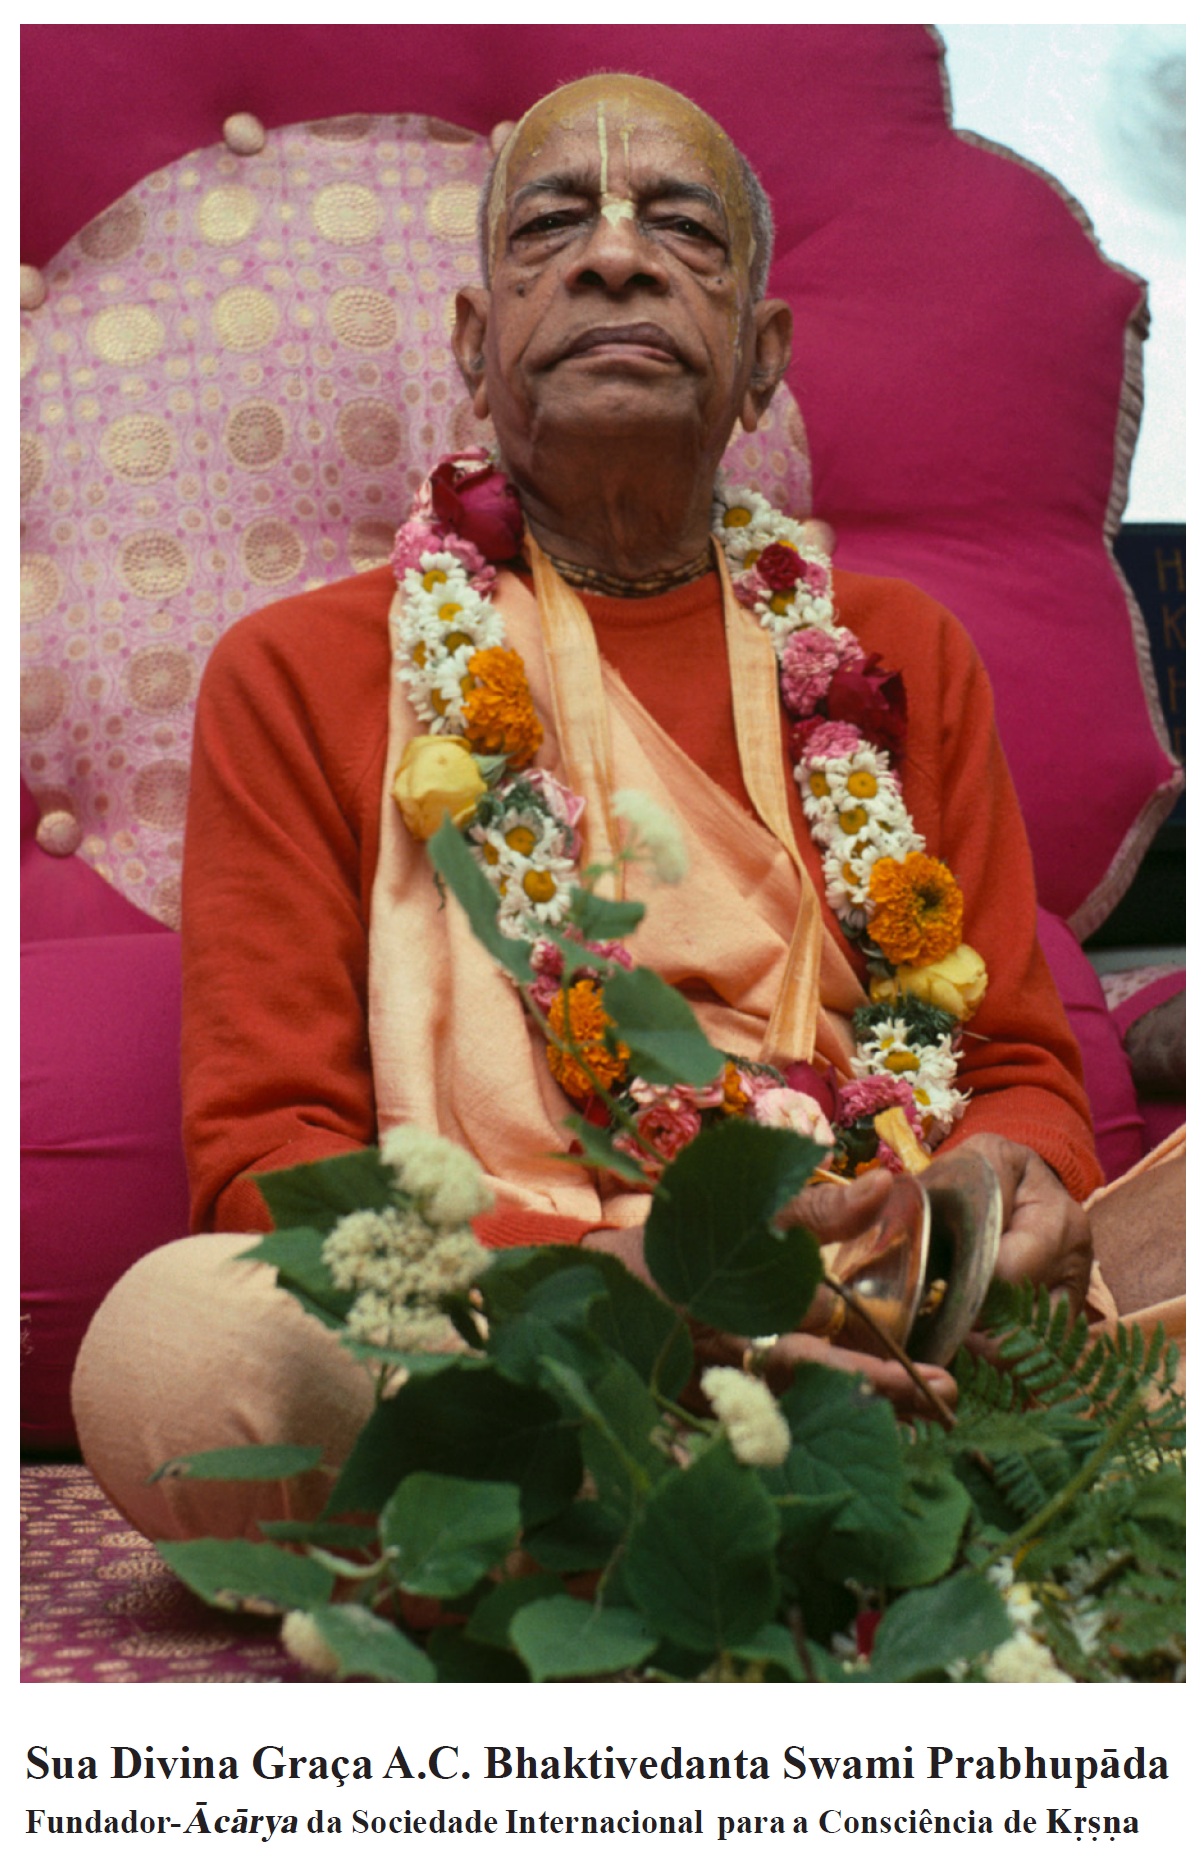 Movimento Hare Krishna: Histórico, Filosofia e Informações, Volta ao  Supremo